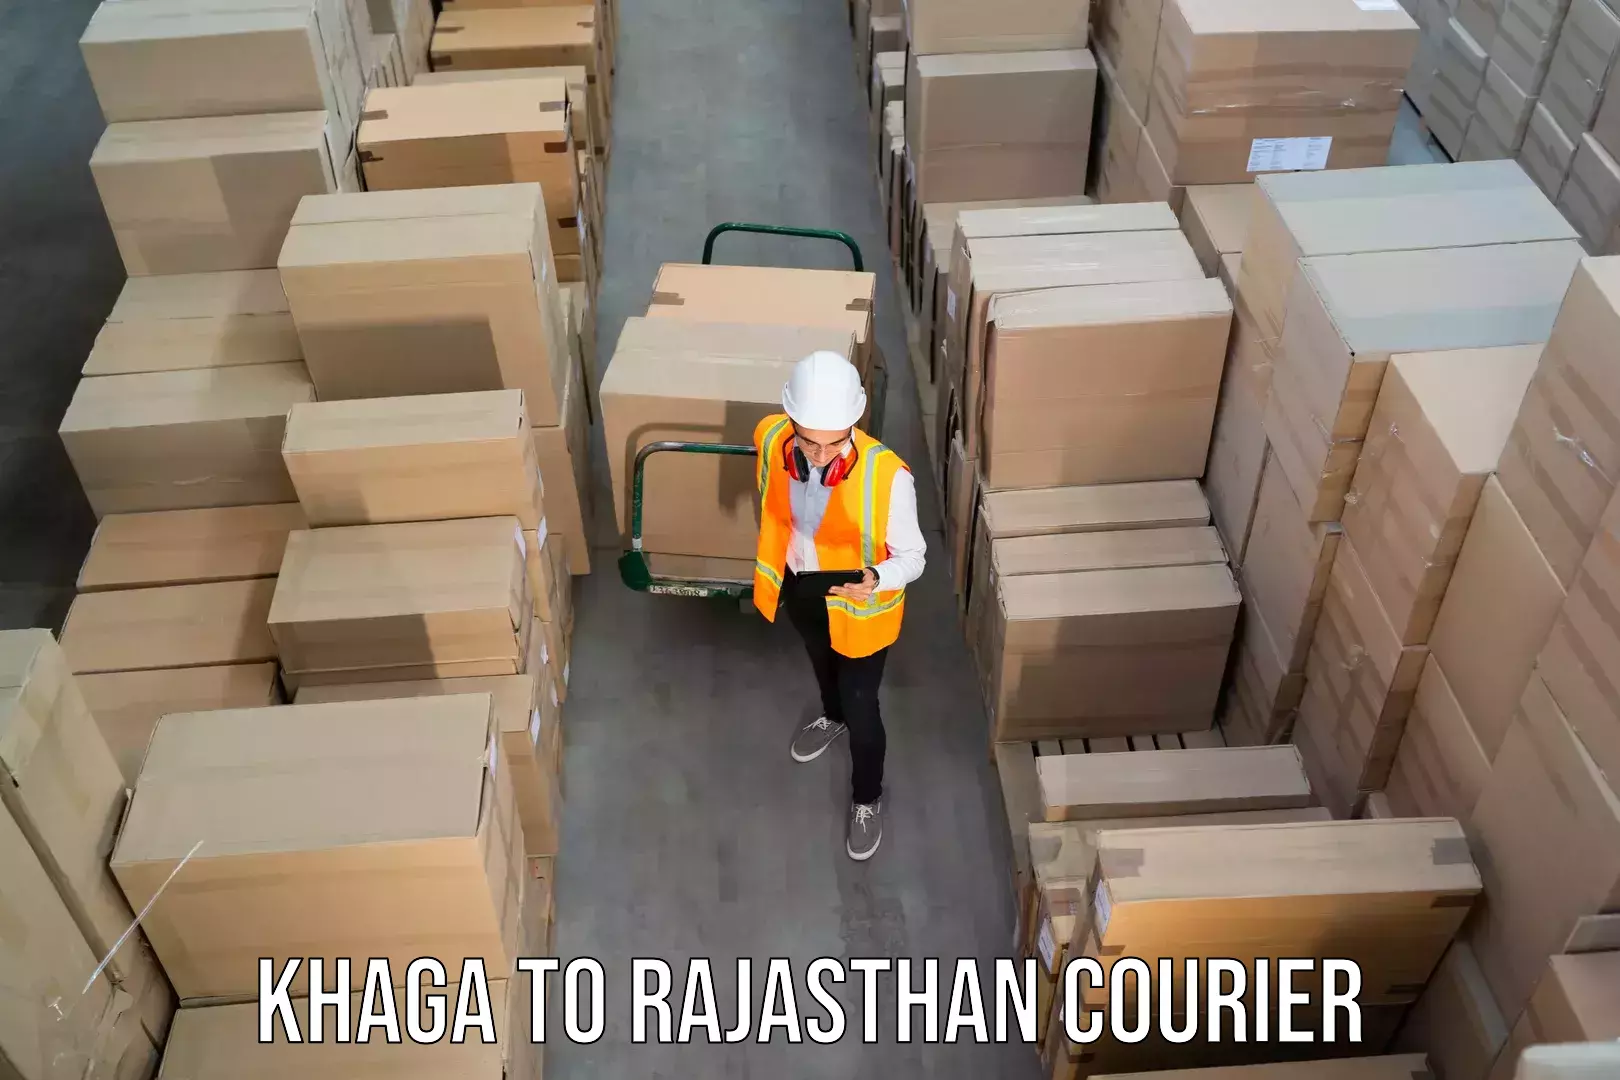 Expedited shipping methods Khaga to Lakheri